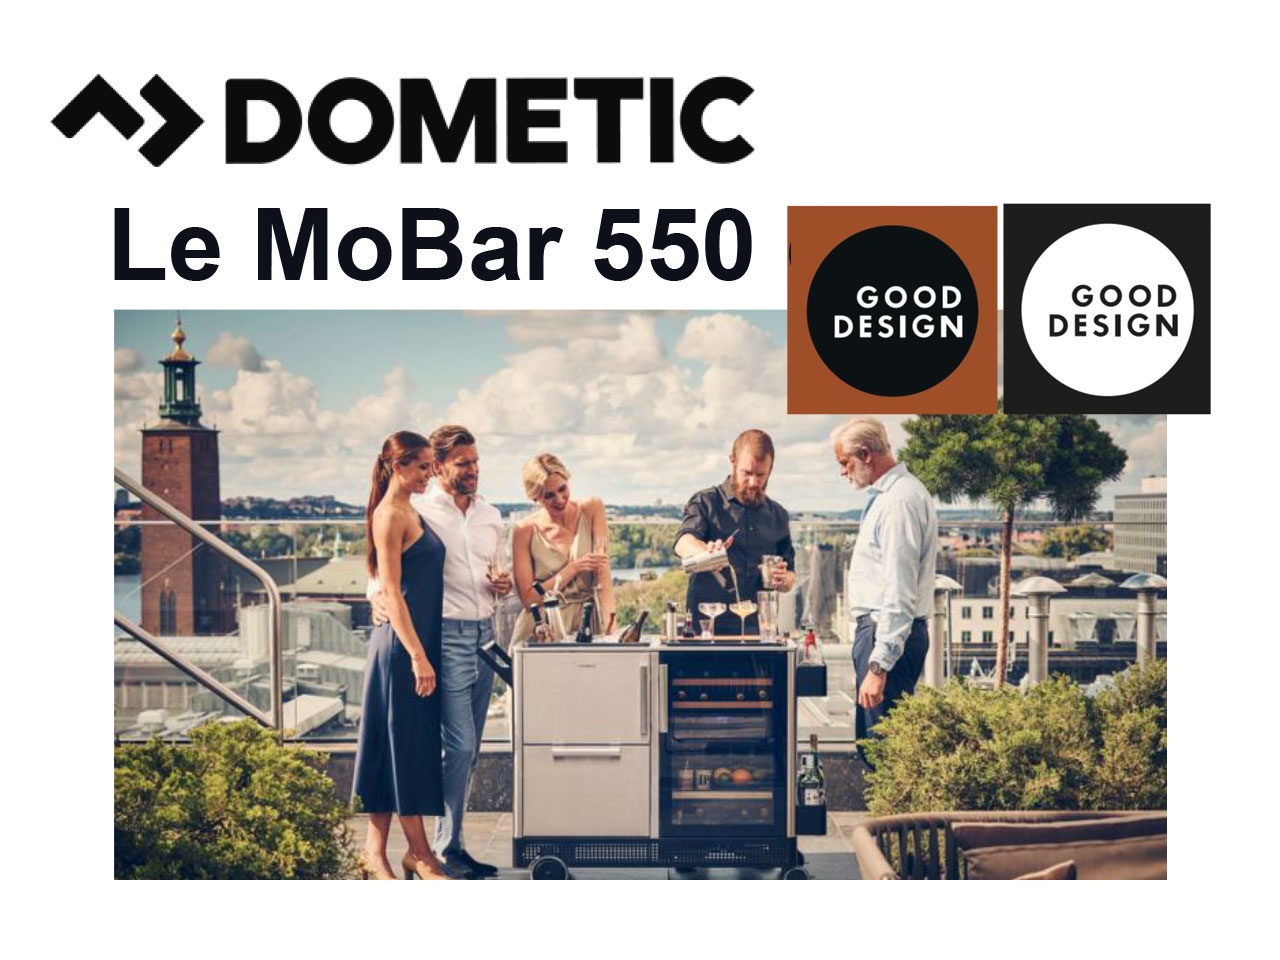 Le MoBar 550 de Dometic reçoit le prestigieux prix GOOD DESIGN 2021